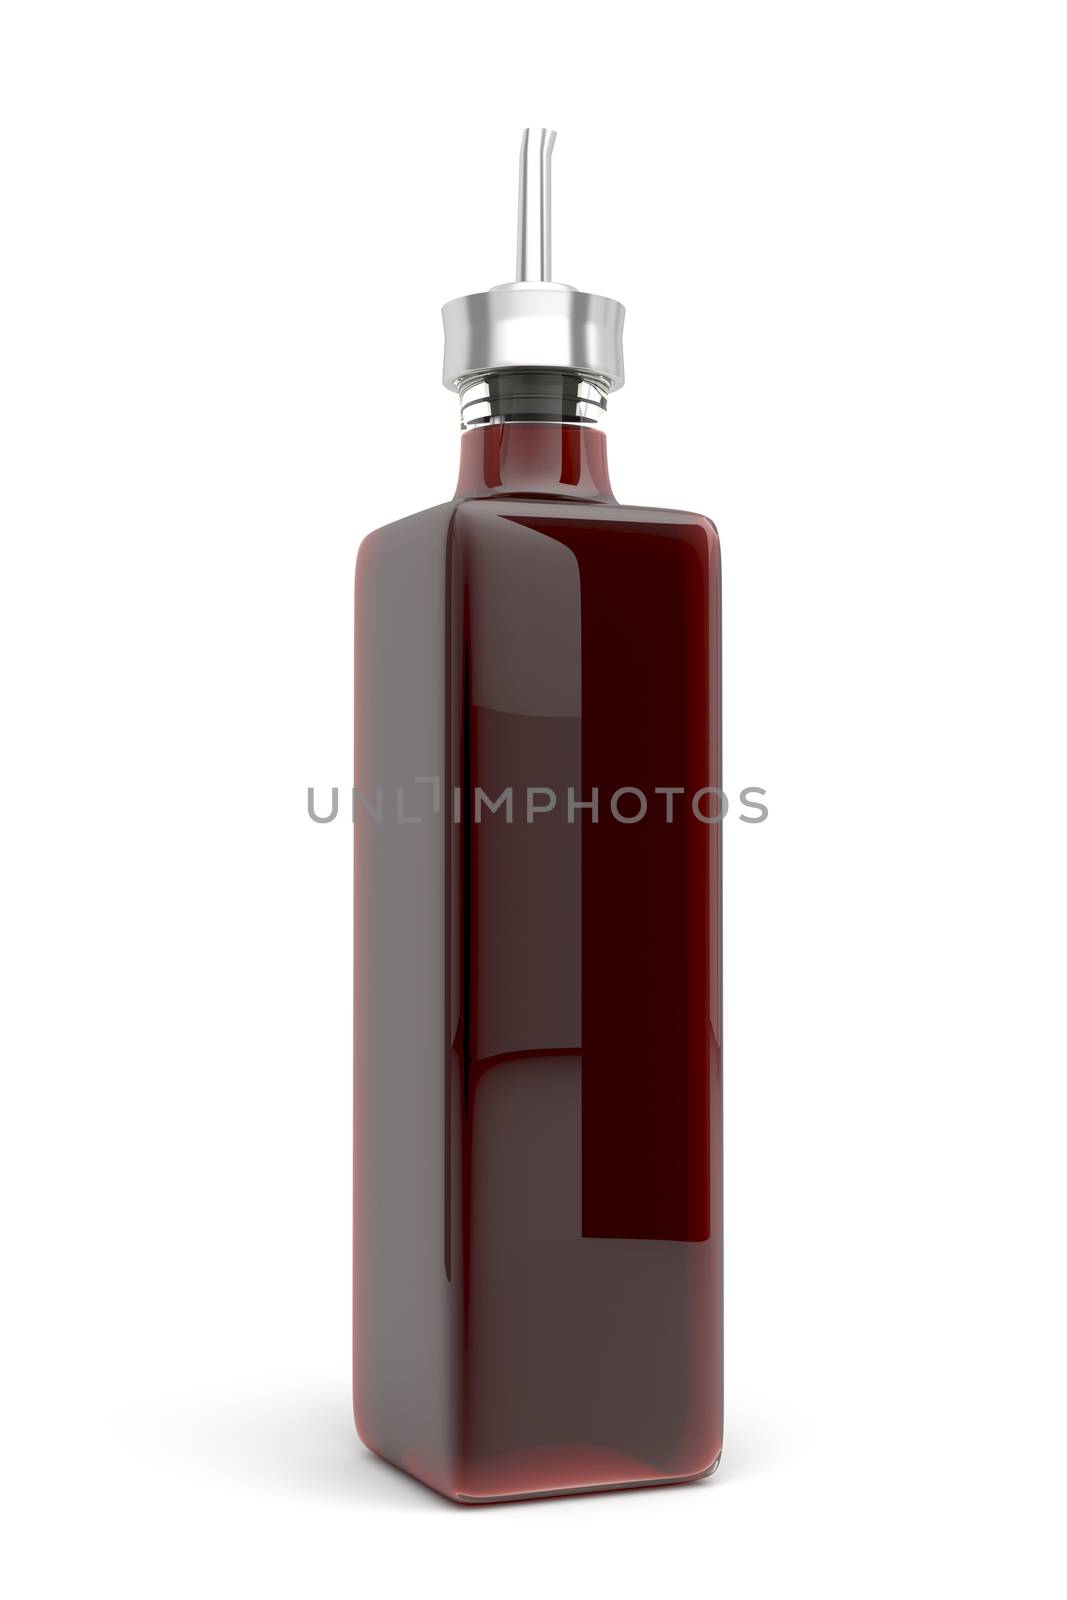 Vinegar in glass bottle on white background